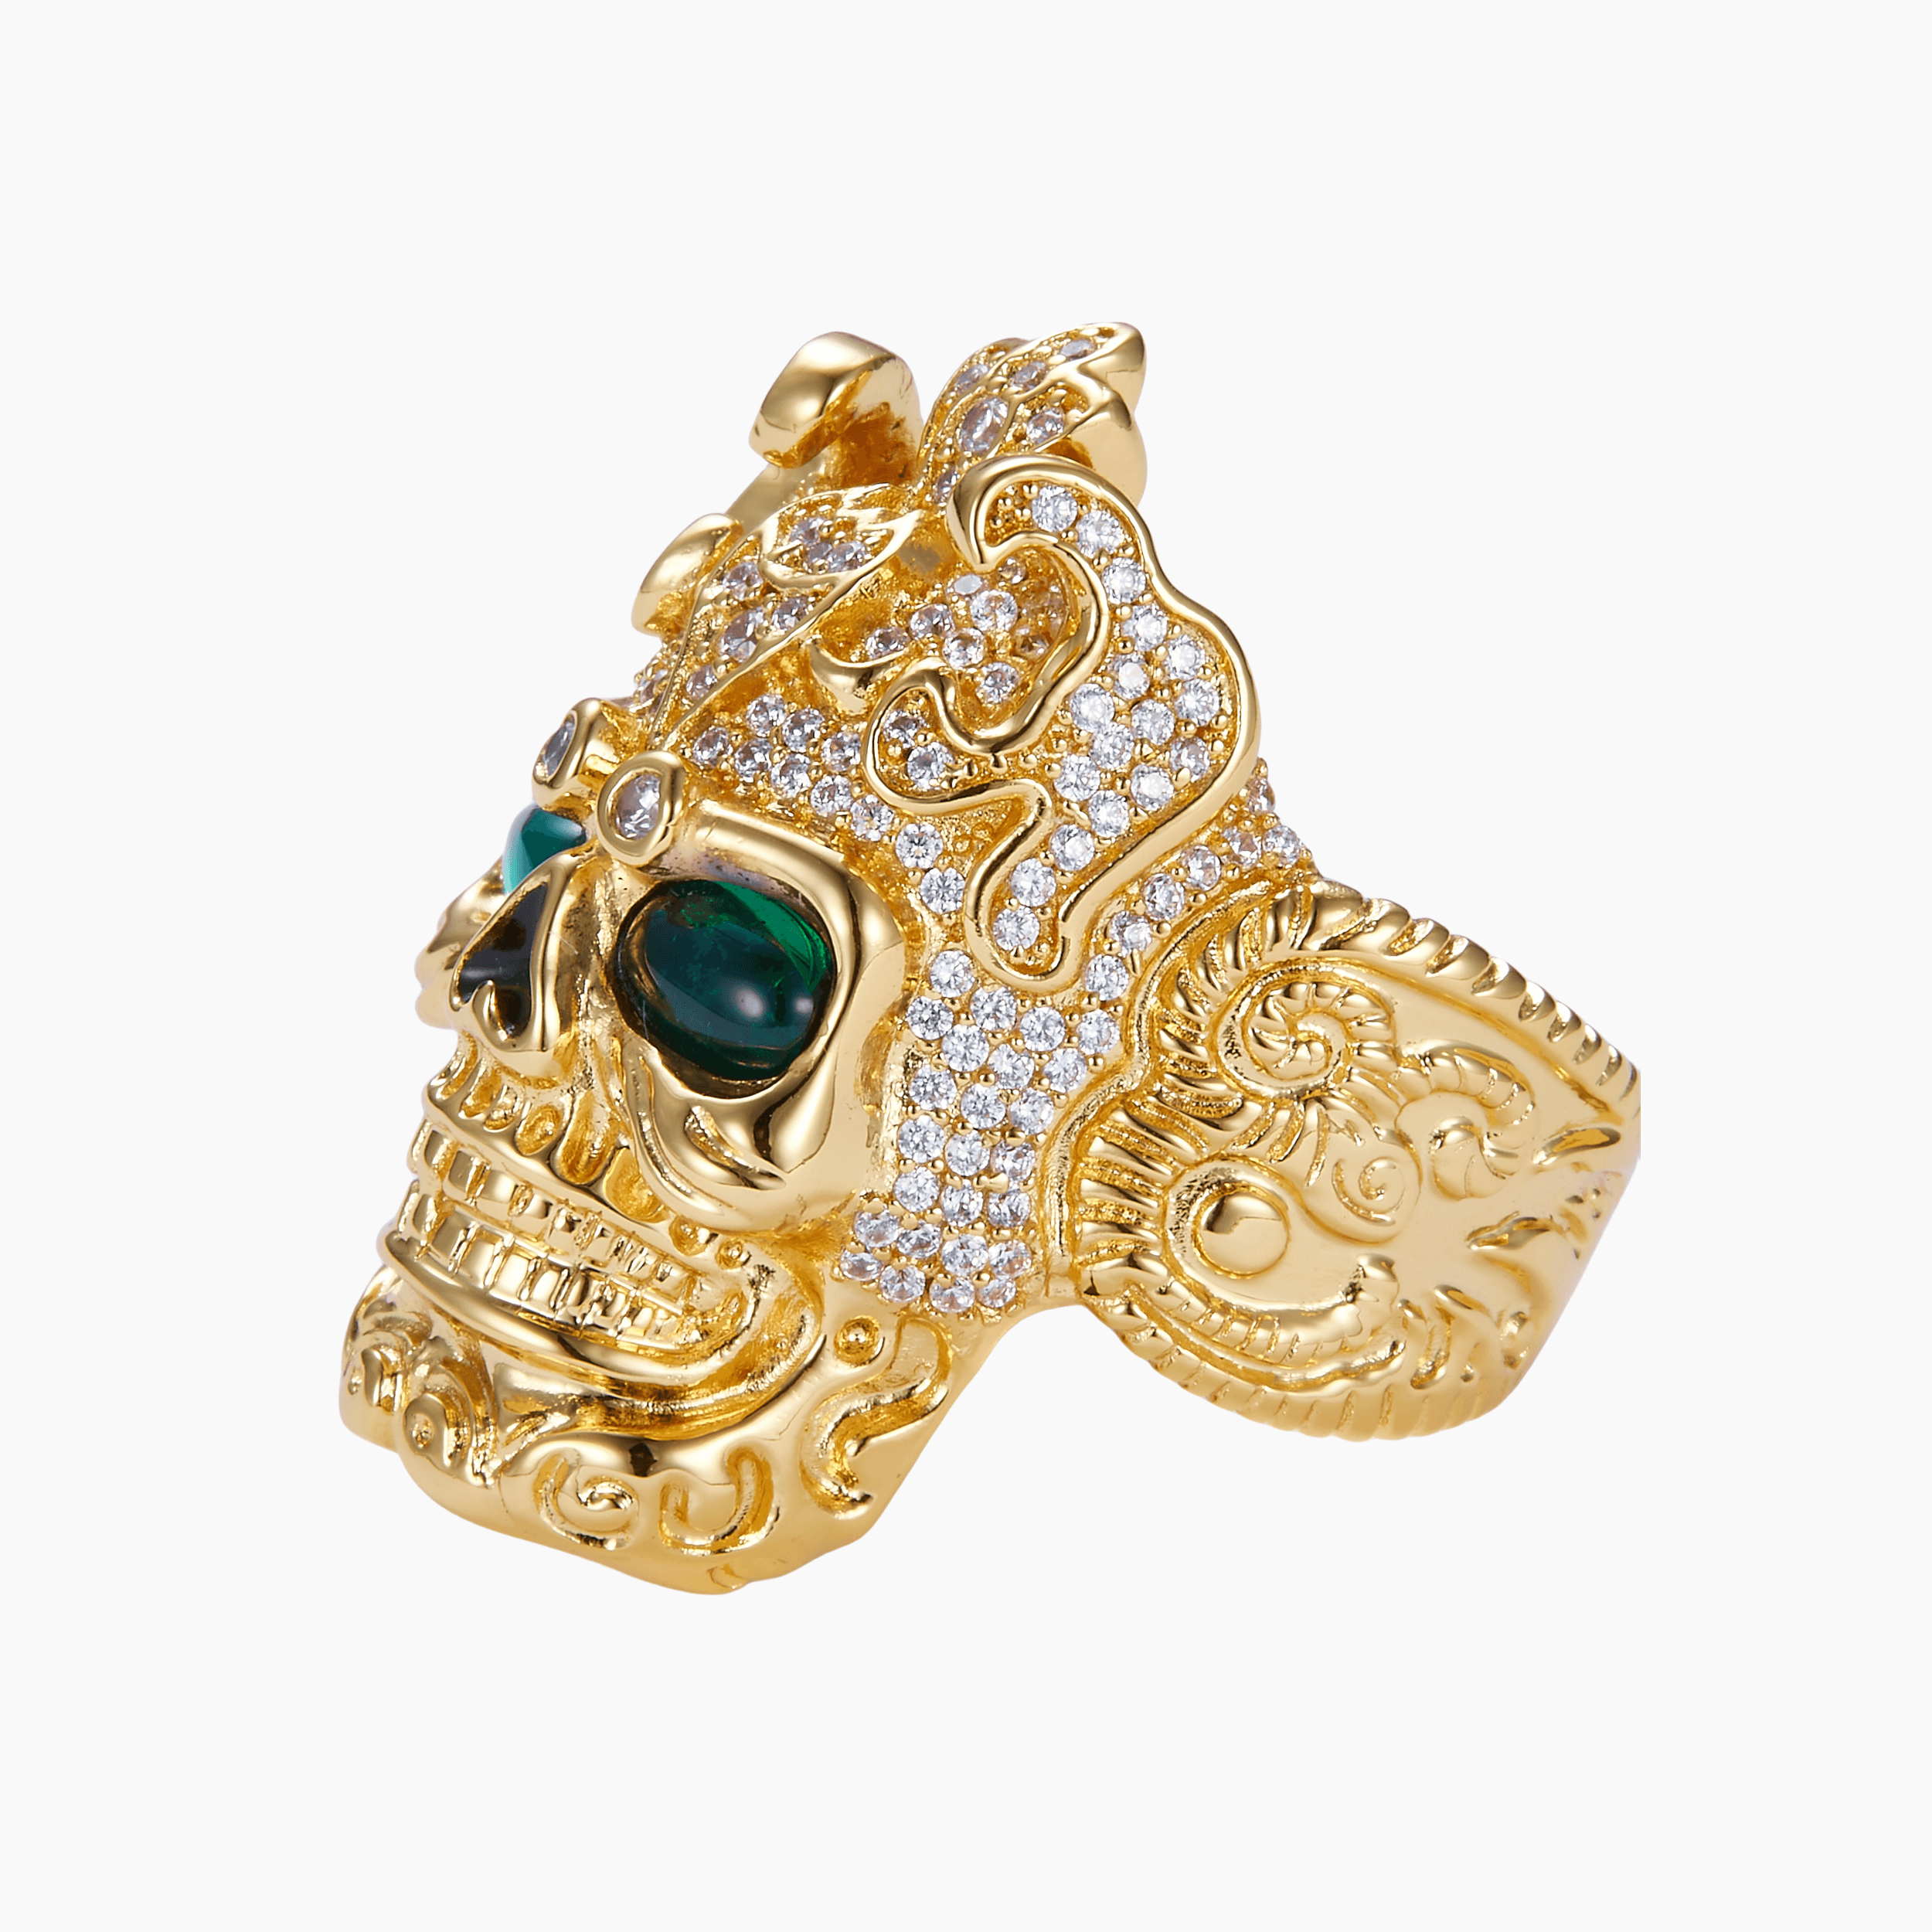 18k Gold Japanese Samurai Skull Ring with Green Emerald